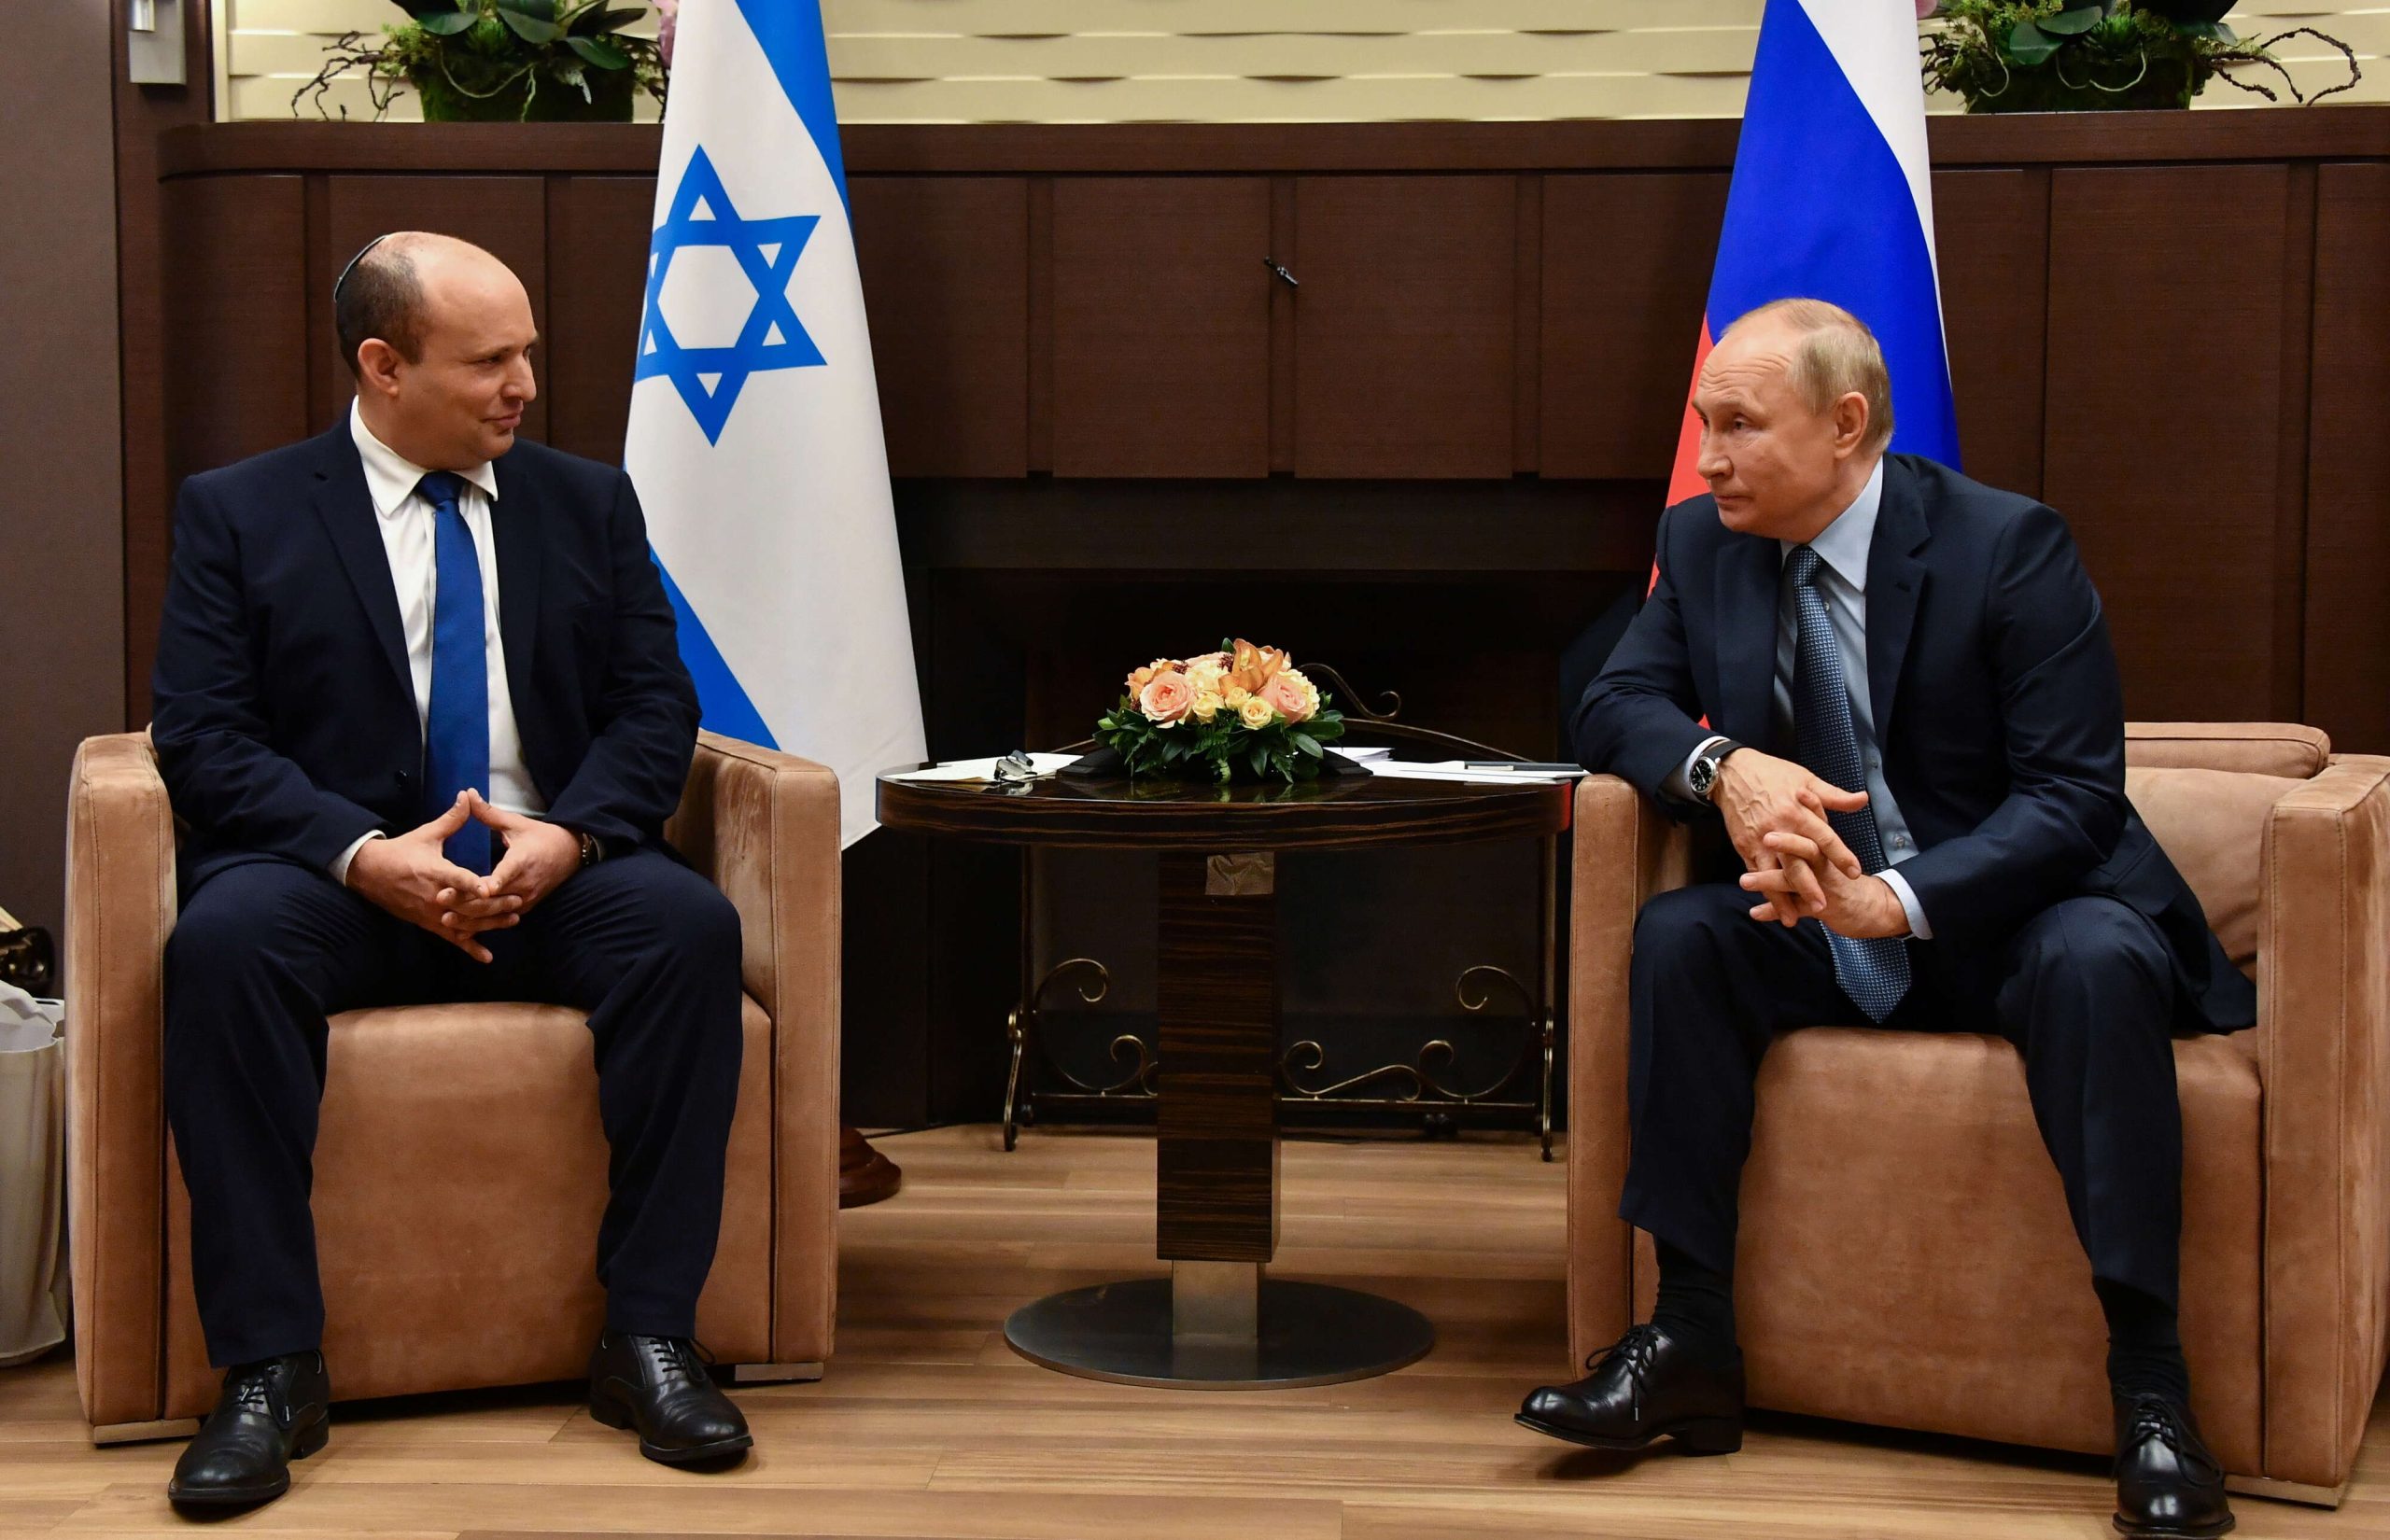 دام برس : بوتين لبينيت: لدى روسيا وإسرائيل خلافات عديدة بشأن سورية لكن هناك نقاط تماس أيضا